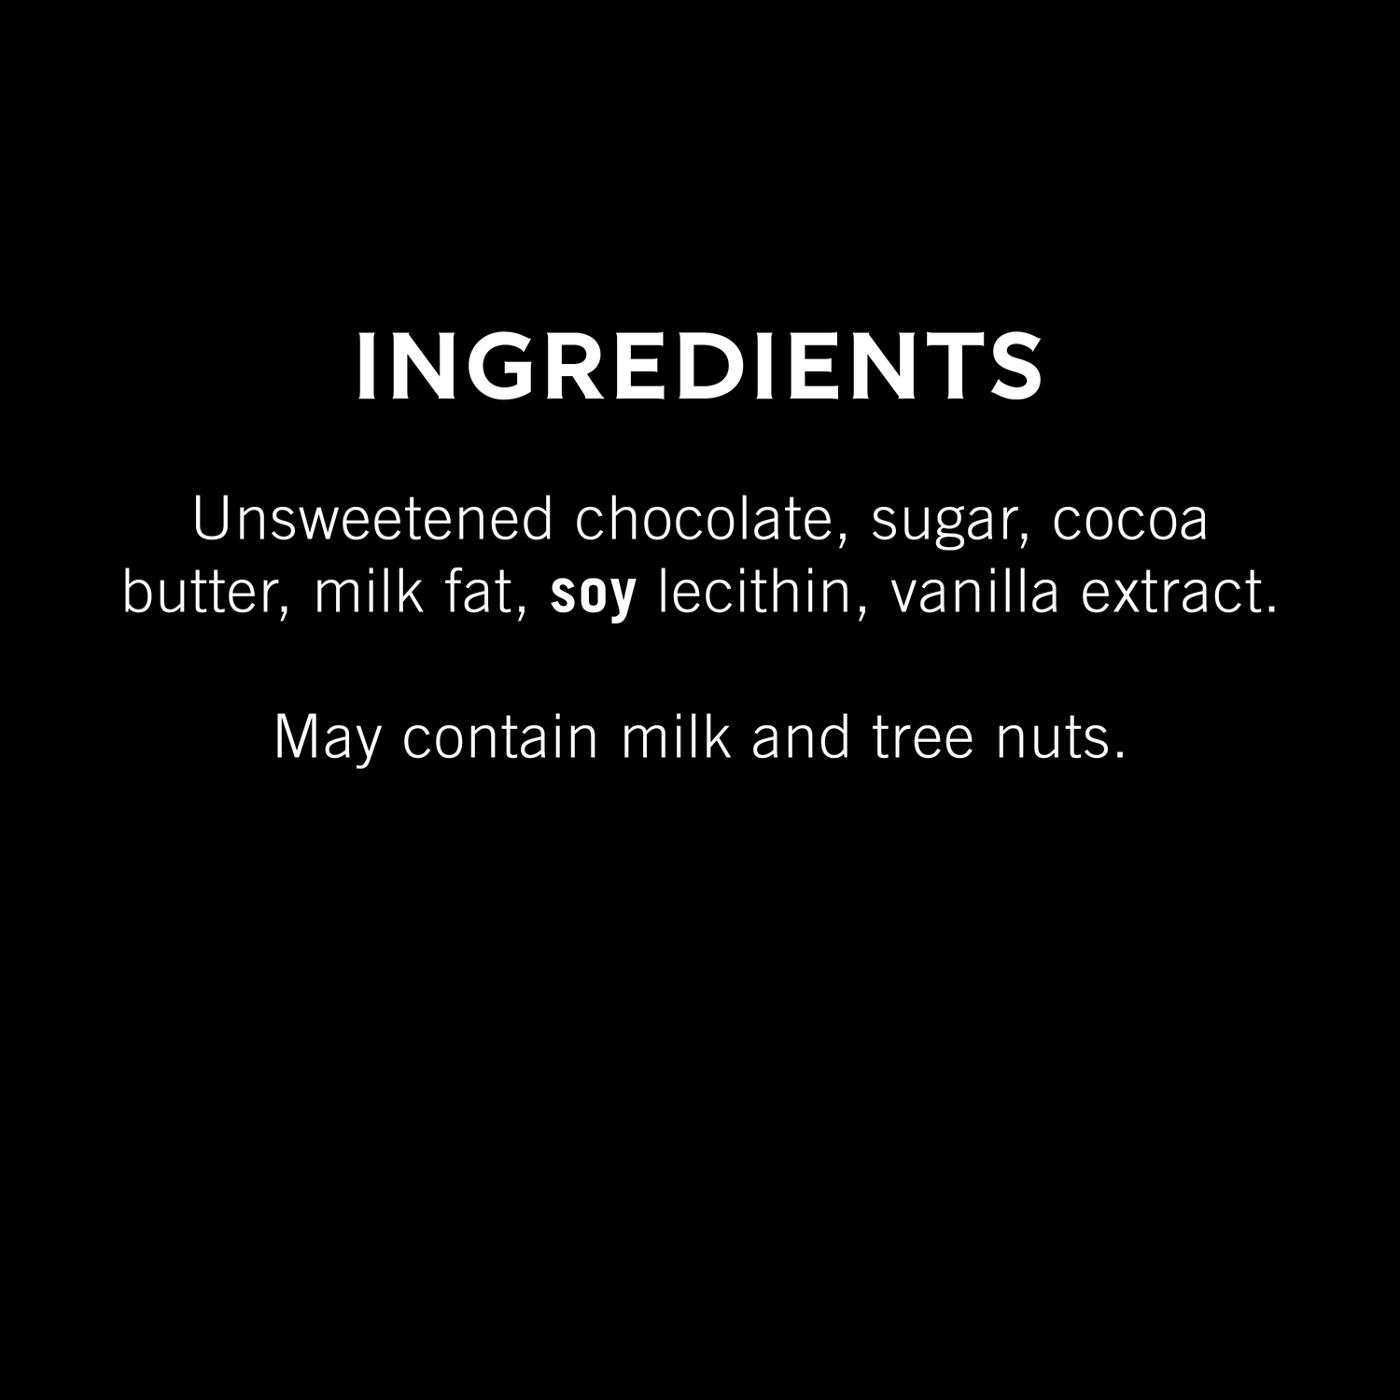 Ghirardelli Intense Dark Dark Chocolate, Sea Salt with 60% Cacao - 3.5 oz